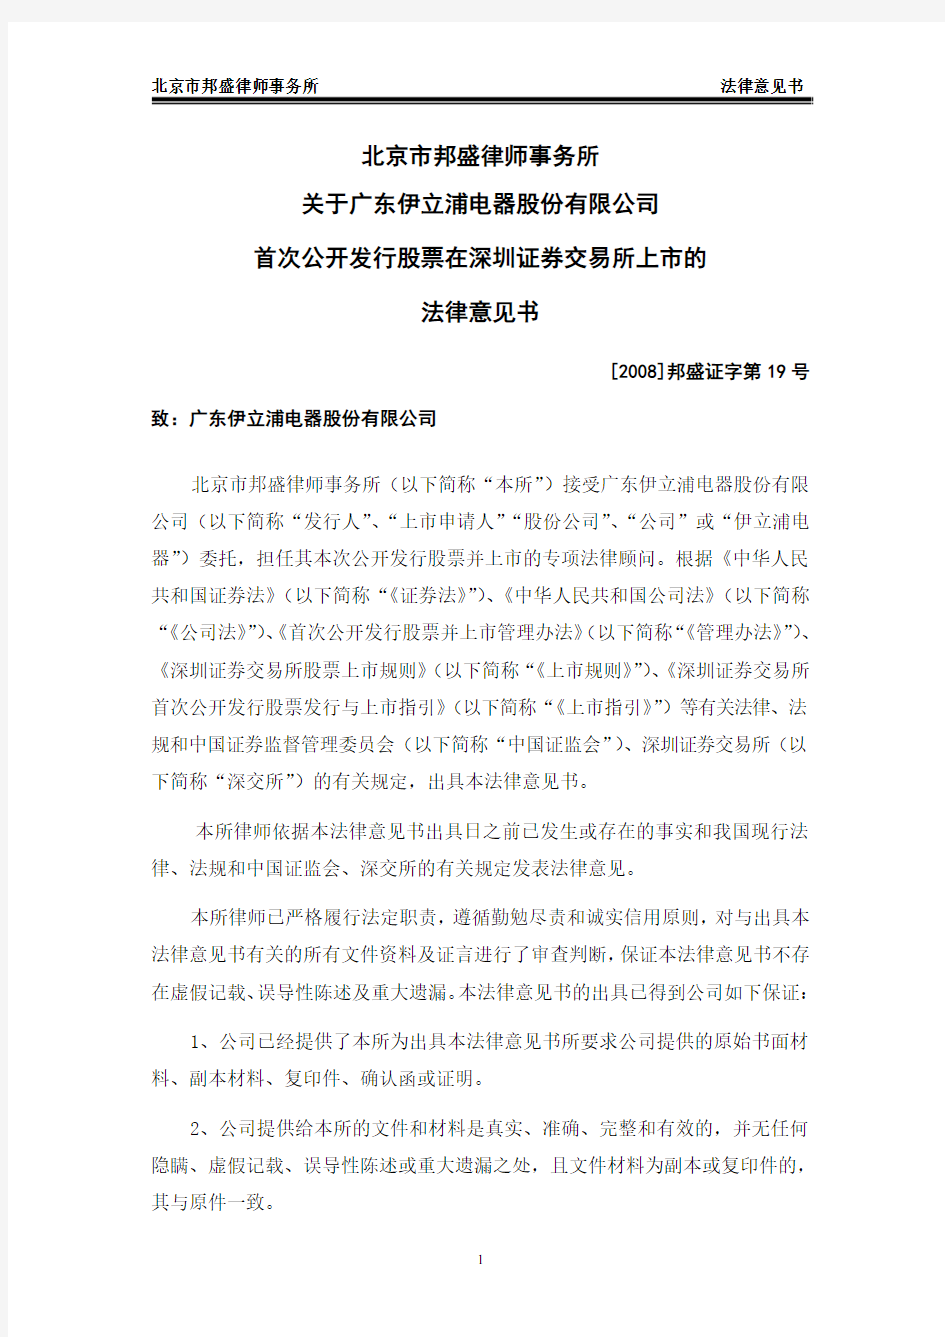 首次公开发行股票在深圳证券交易所上市的法律意见书